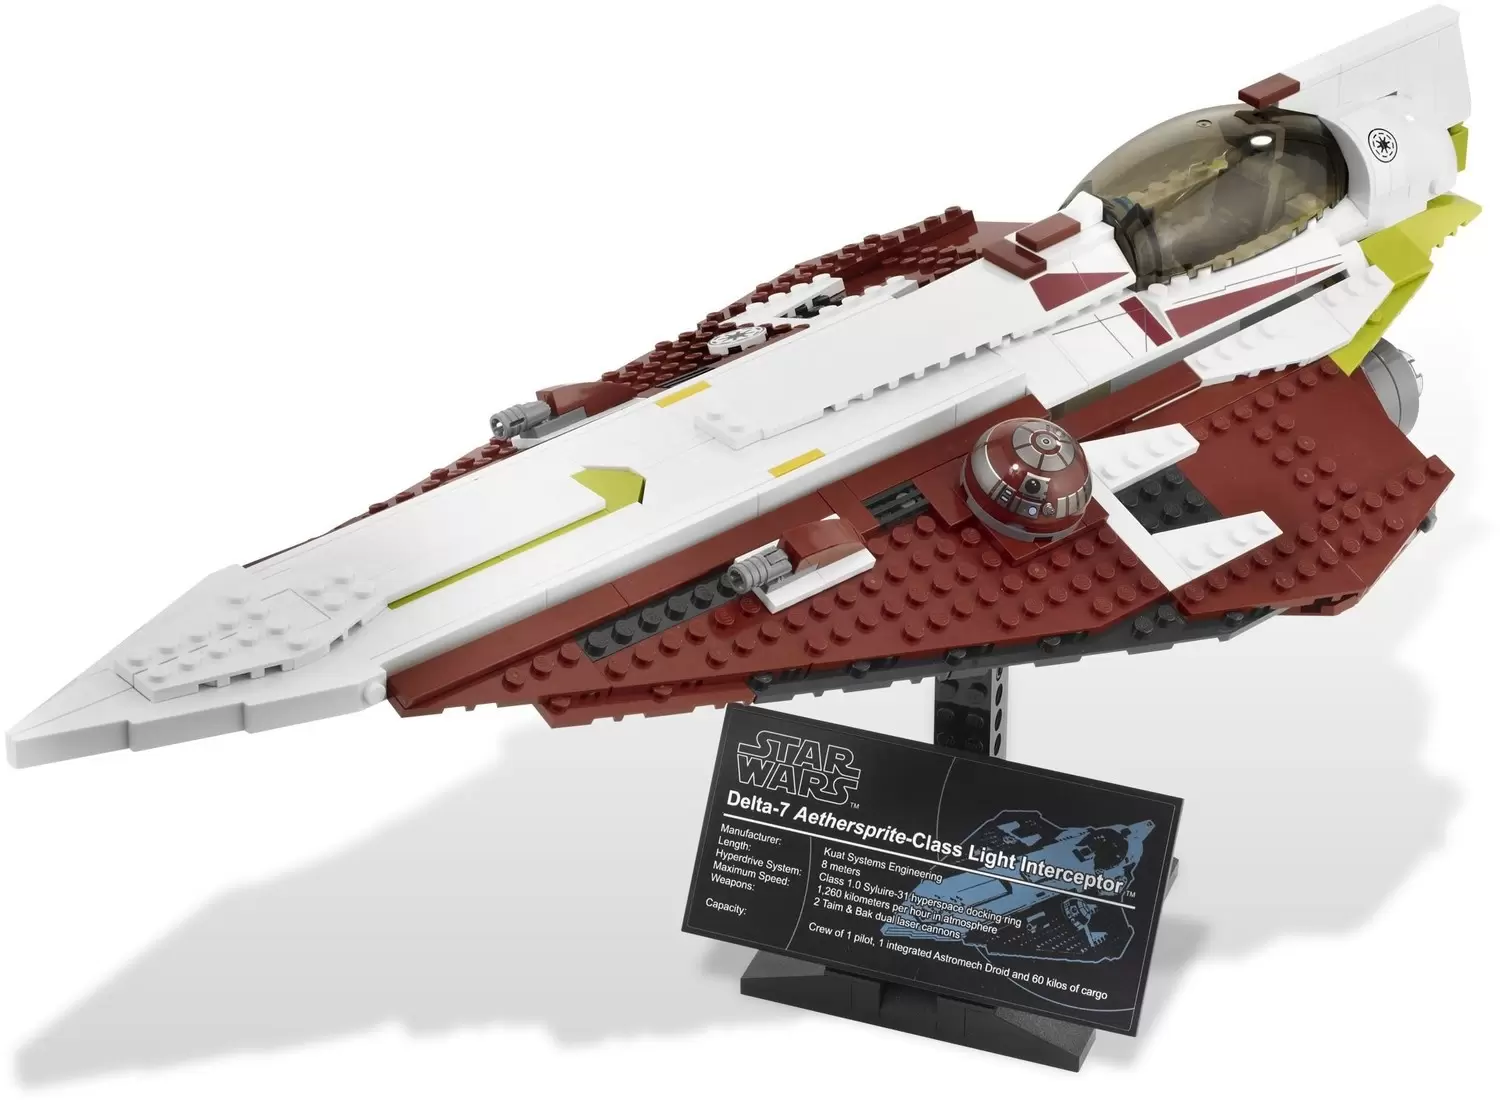 Obi-Wan's Jedi Starfighter - LEGO Star Wars 10215